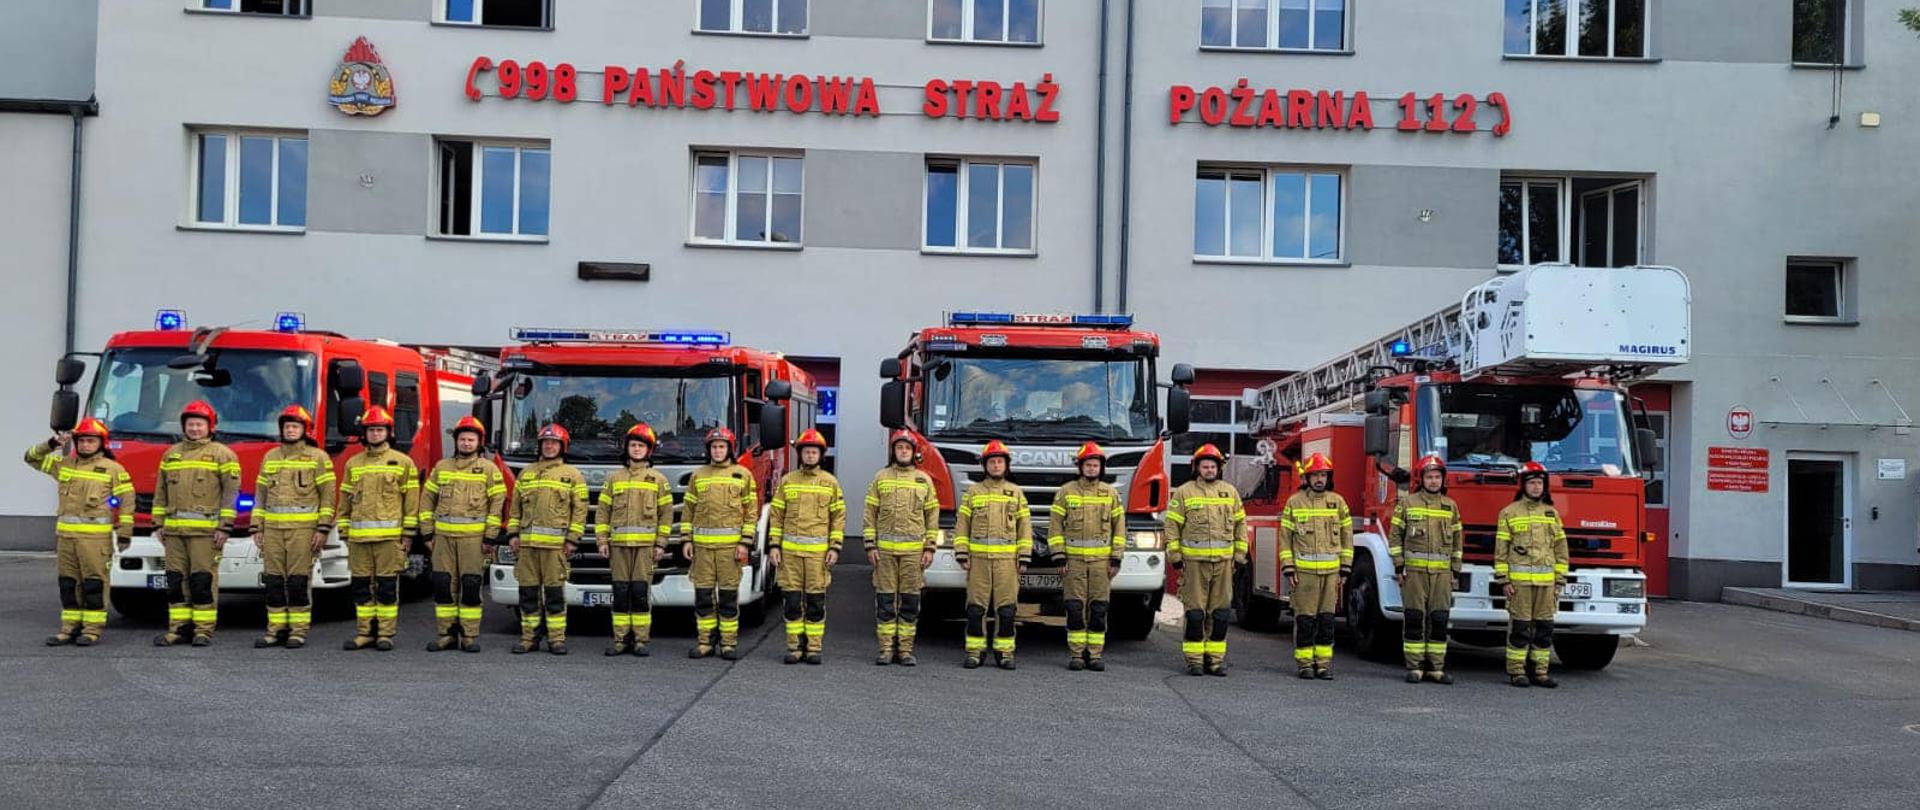 Na zdjęciu znajdują się strażacy z JRG 1 Ruda Śląska ustawieni w szeregu przed samochodami ratowniczo gaśniczymi, na tle jednostki ratowniczo gaśniczej.